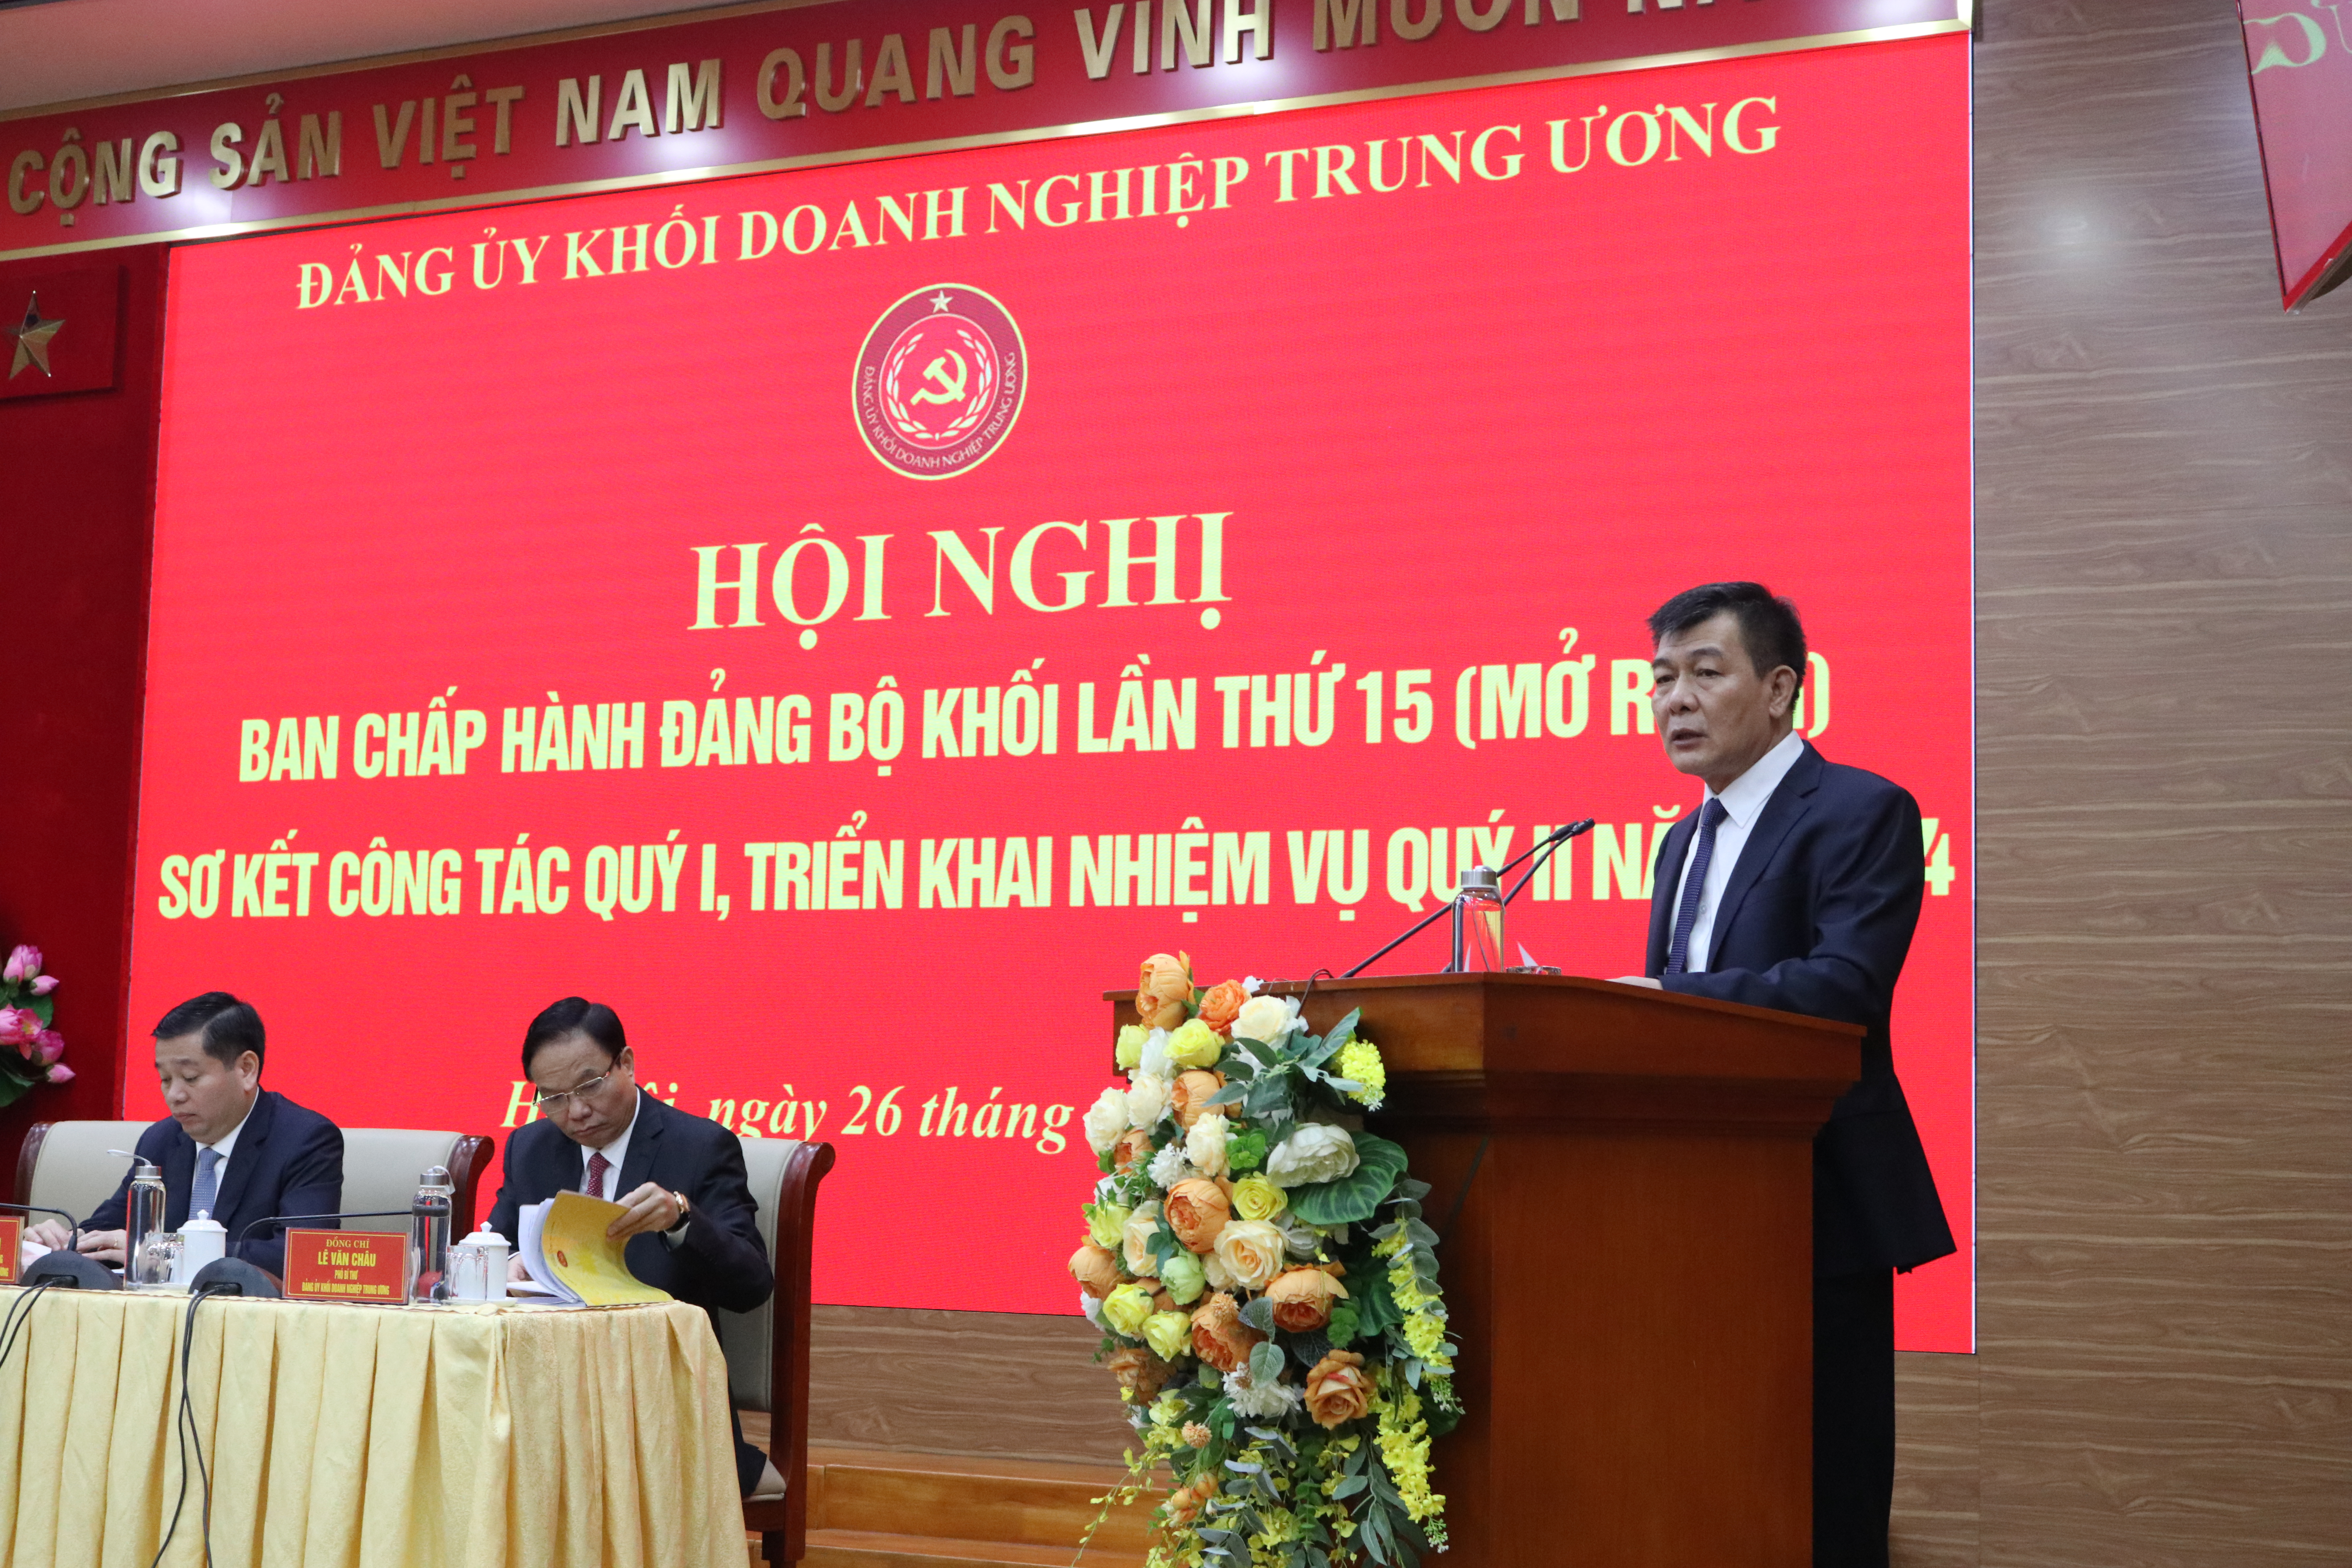 Đồng chí Nguyễn Đức Phong, Phó Bí thư Thường trực Đảng ủy Khối Doanh nghiệp Trung ương